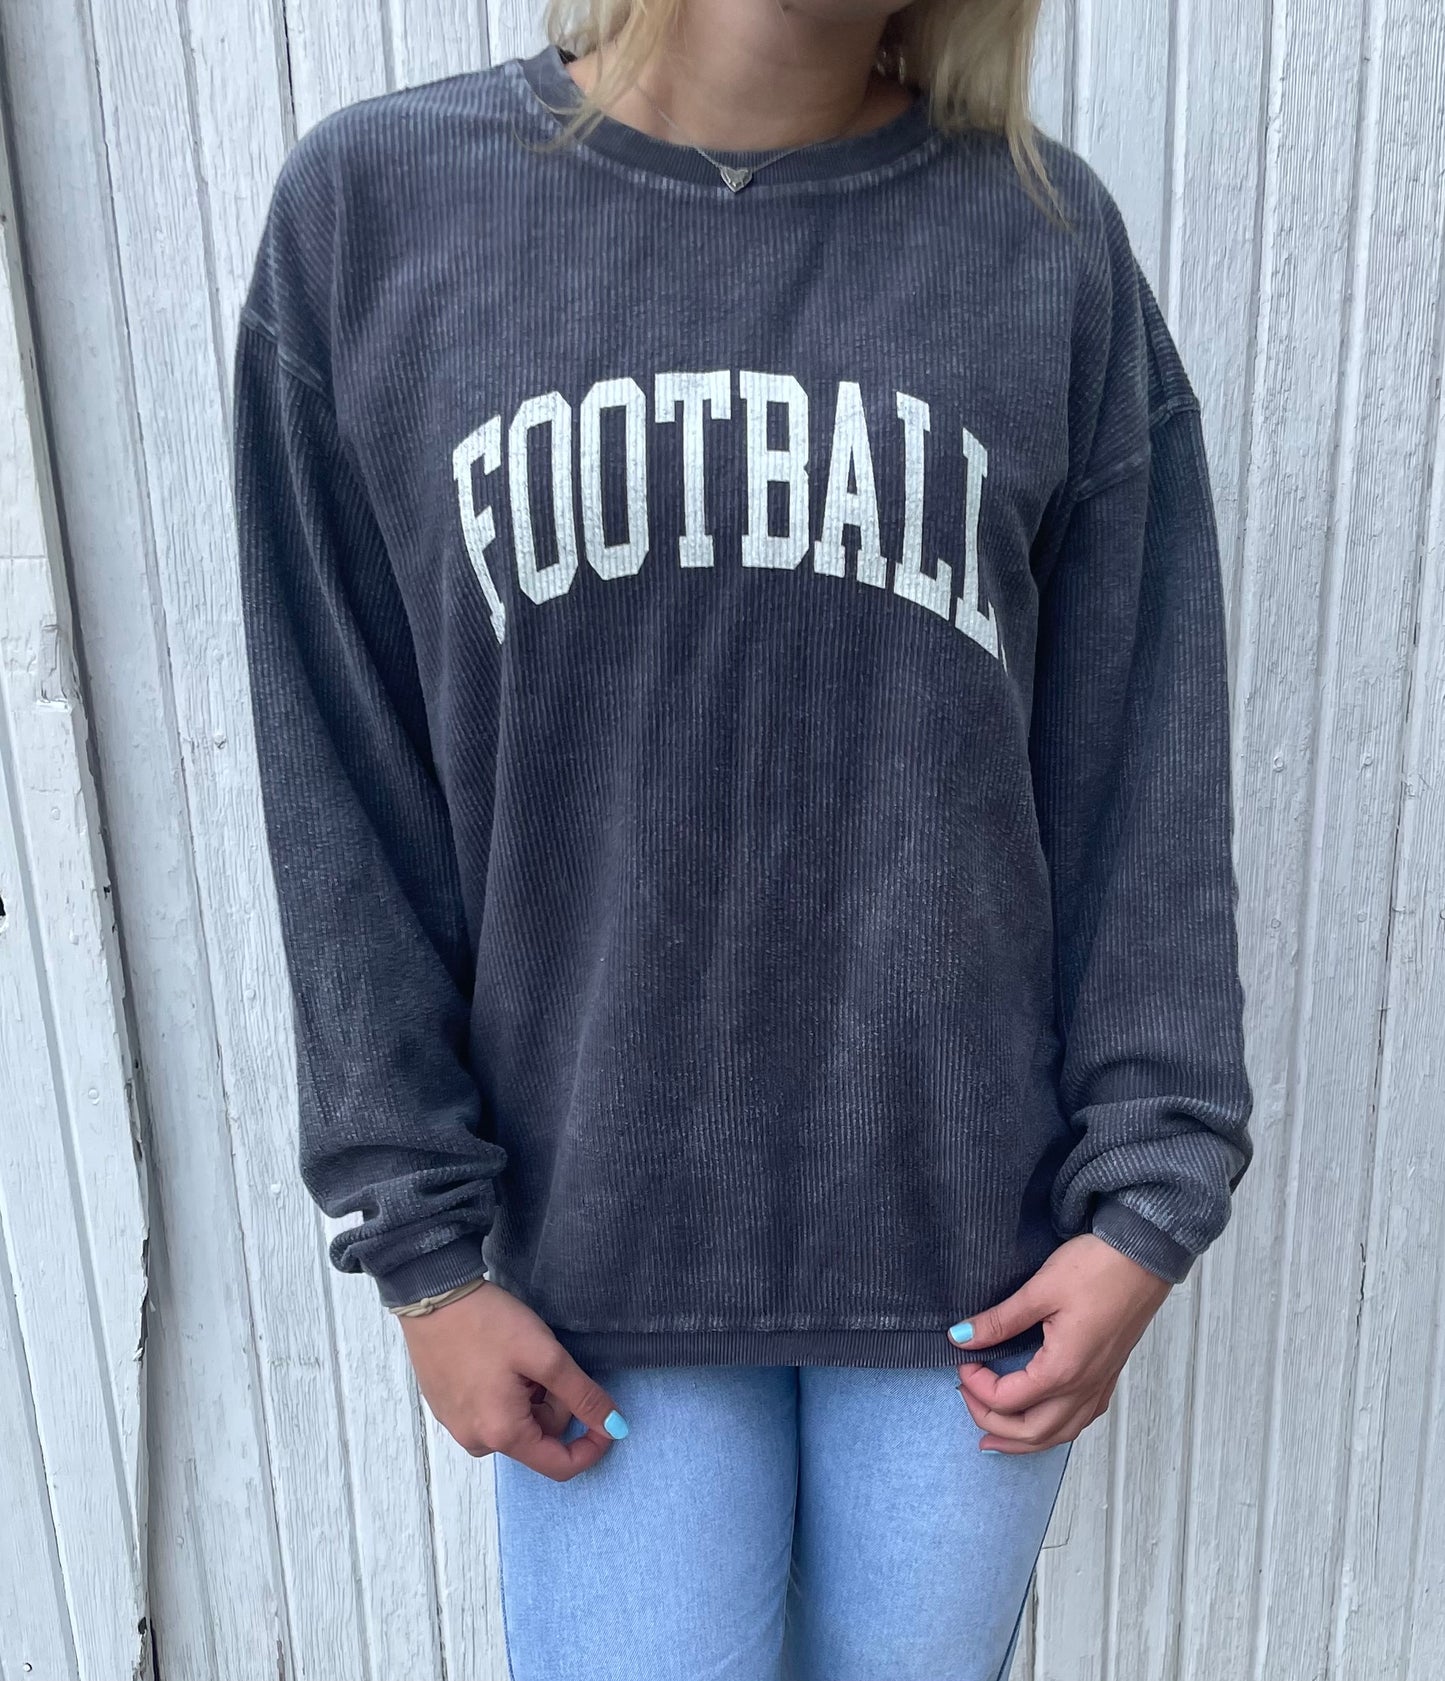 Vintage Football Sweatshirt